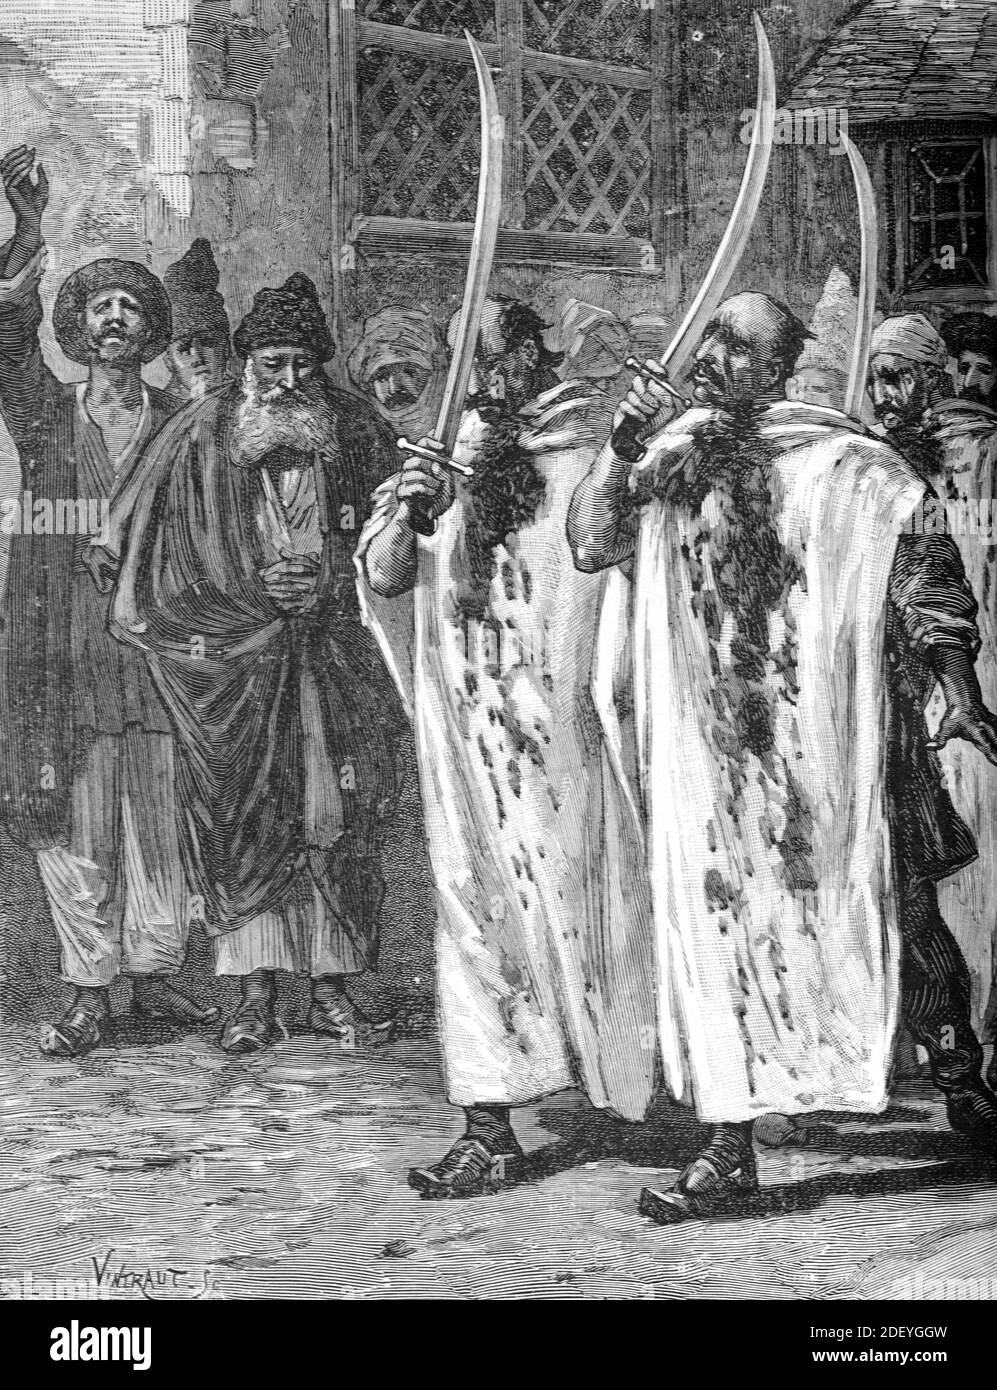 Penitenti religiosi o fondamentalisti musulmani in Azerbaigian Caucaso (Eng Vintraut, 1884) Illustrazione o incisione d'epoca Foto Stock